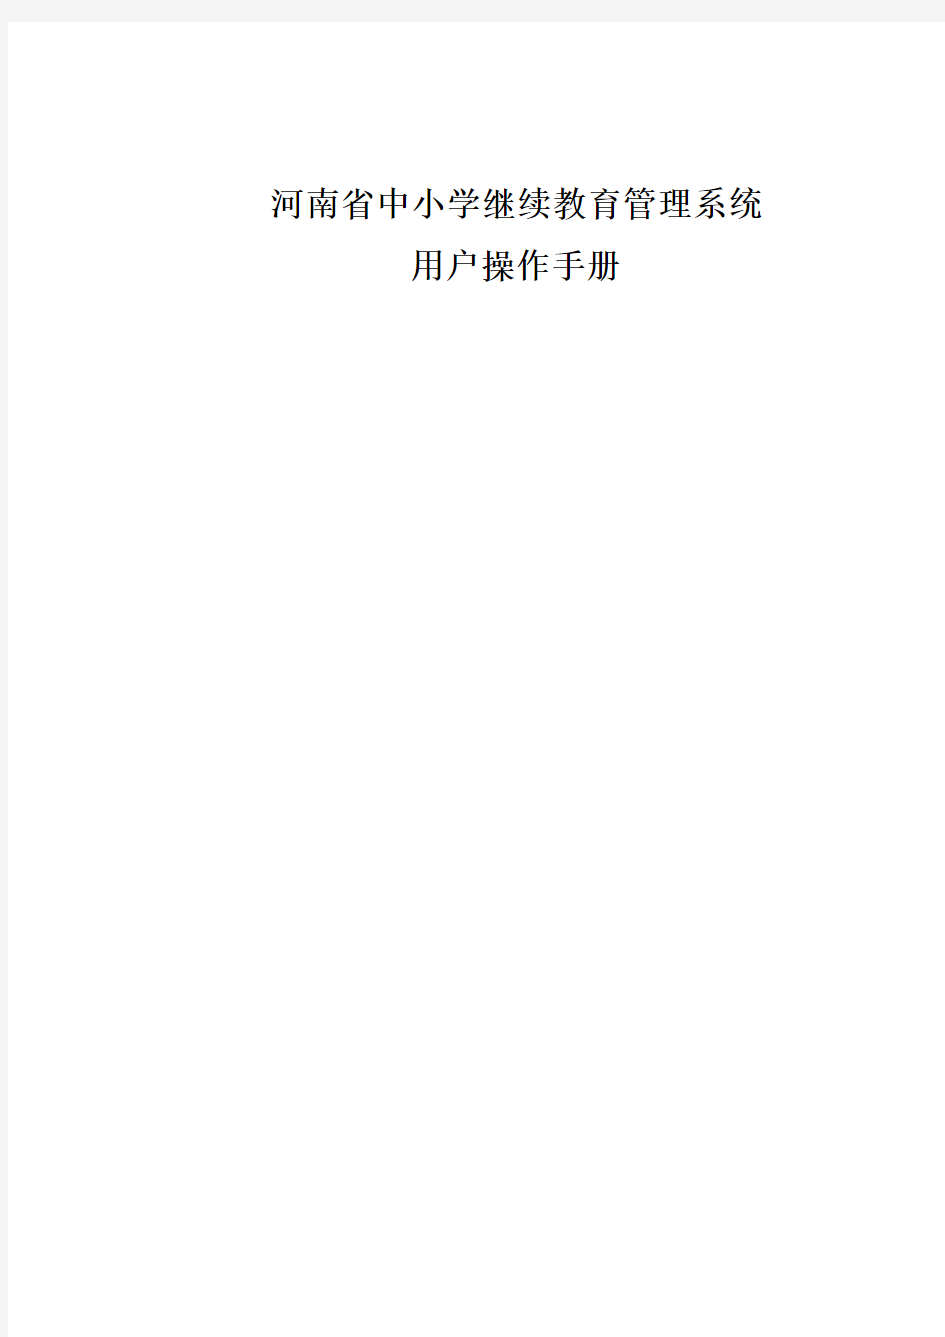 河南省中小学继续教育管理系统用户使用手册